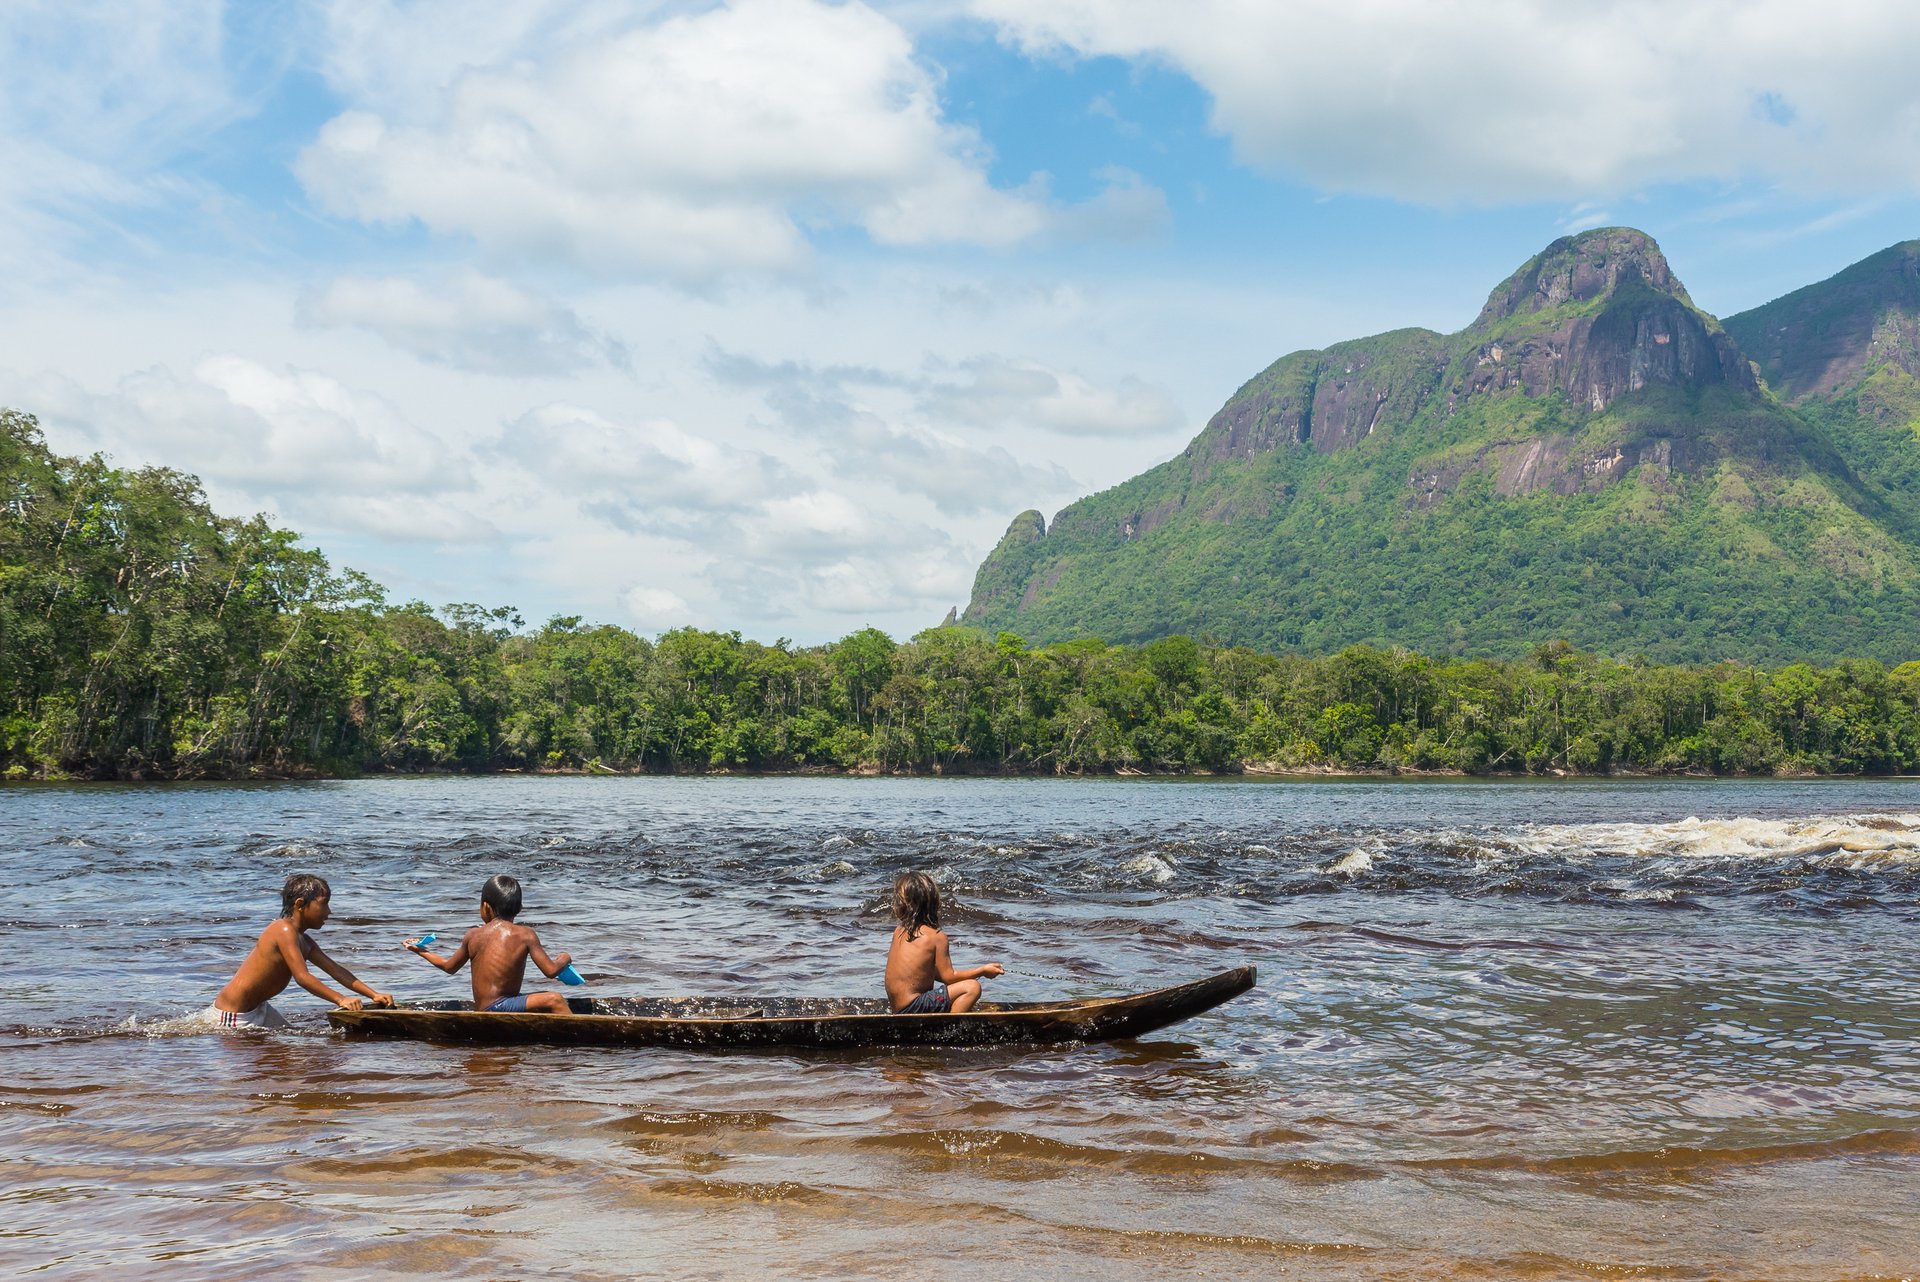 Des enfants de l'ethnie Piaroa jouent sur un canoë dans les eaux de la rivière Autana, dans l'état amazonas, au sud du Venezuela